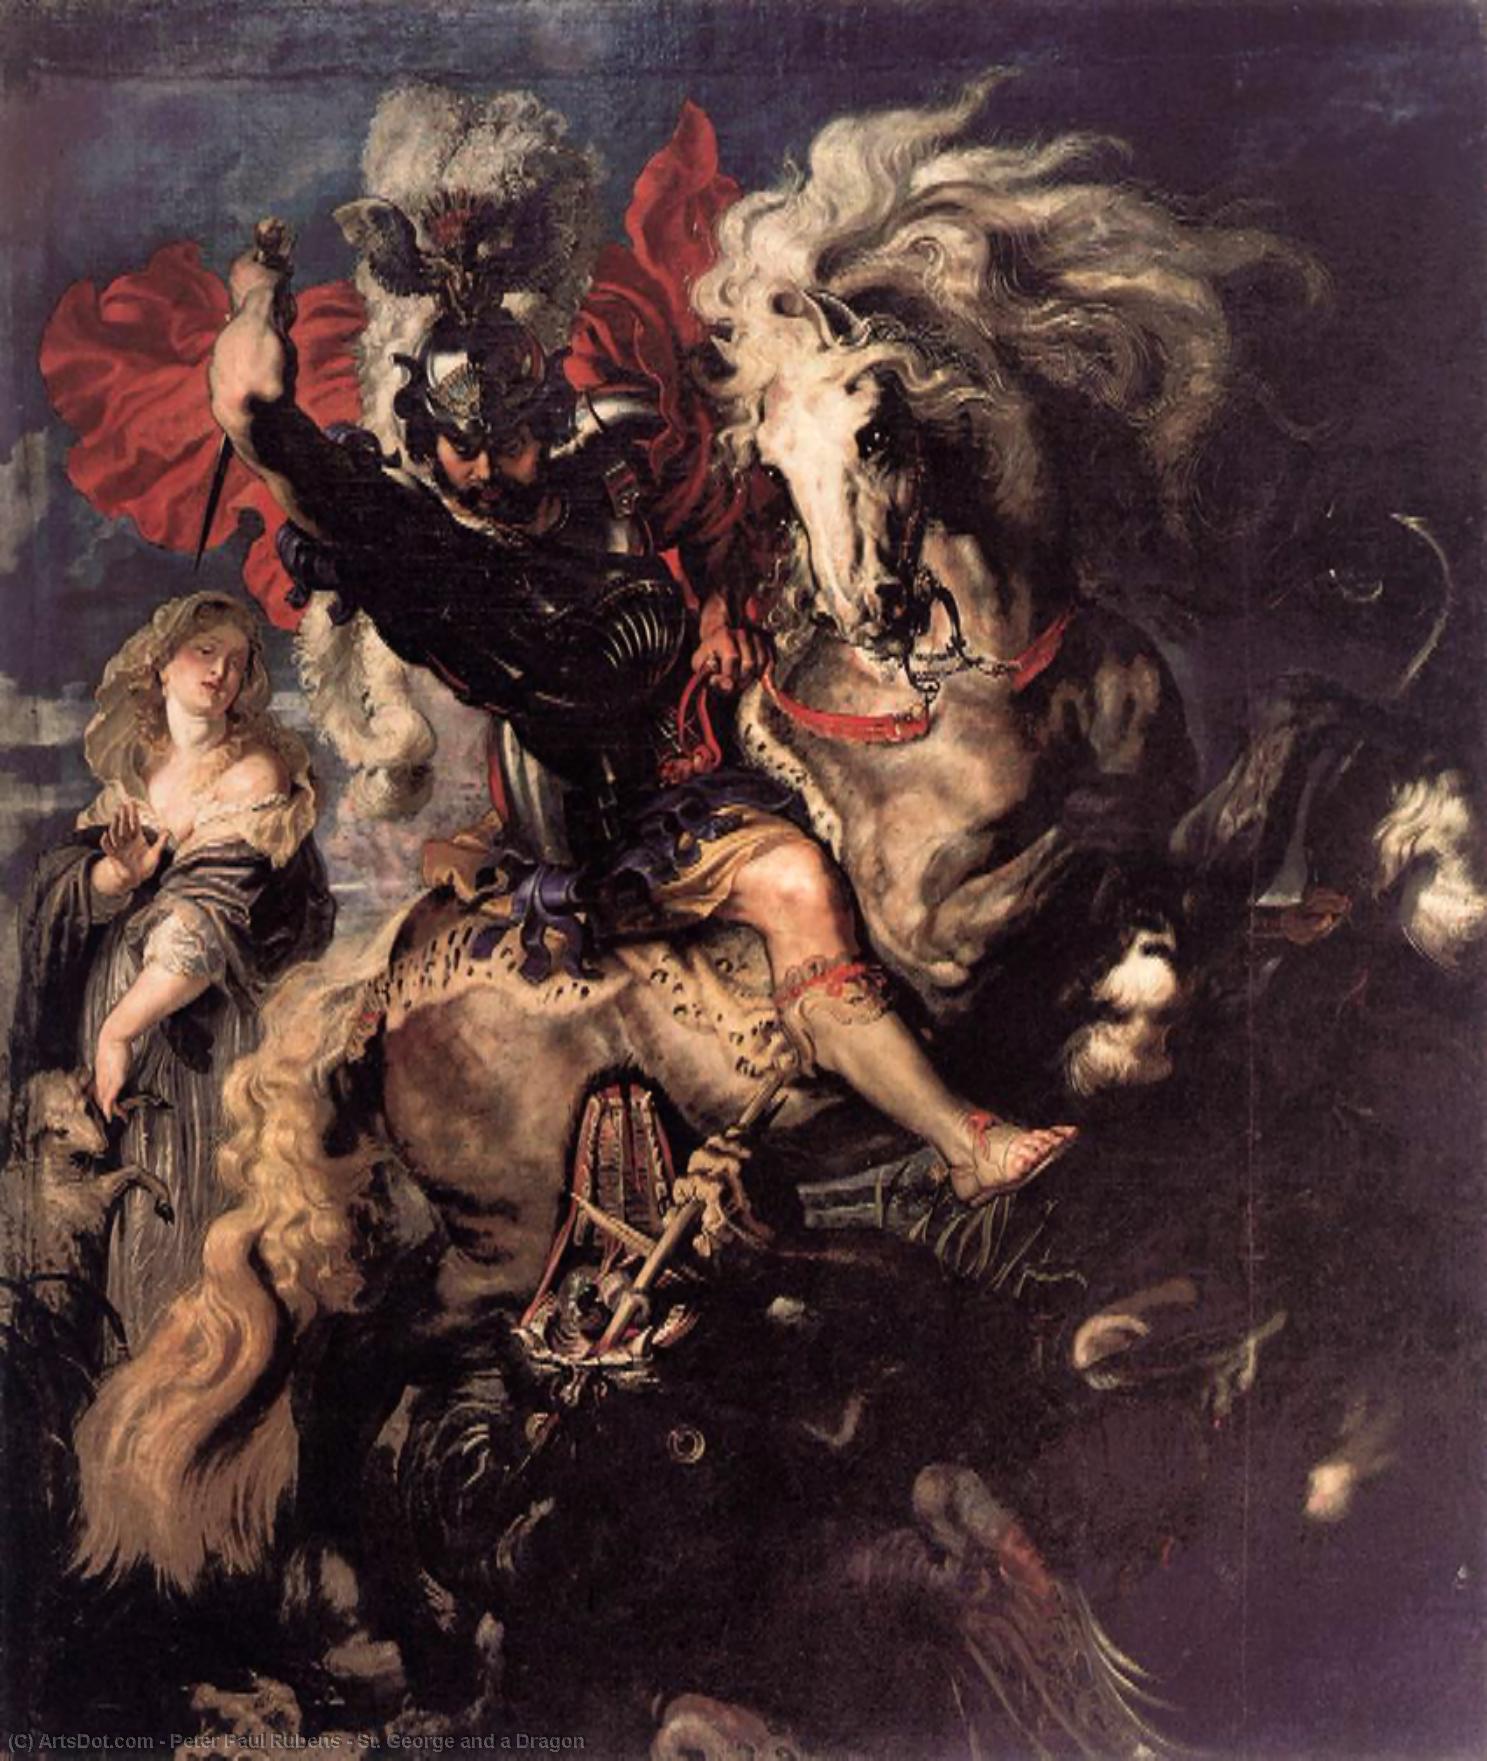 WikiOO.org - Энциклопедия изобразительного искусства - Живопись, Картины  Peter Paul Rubens - святой георг Причем     Дракон